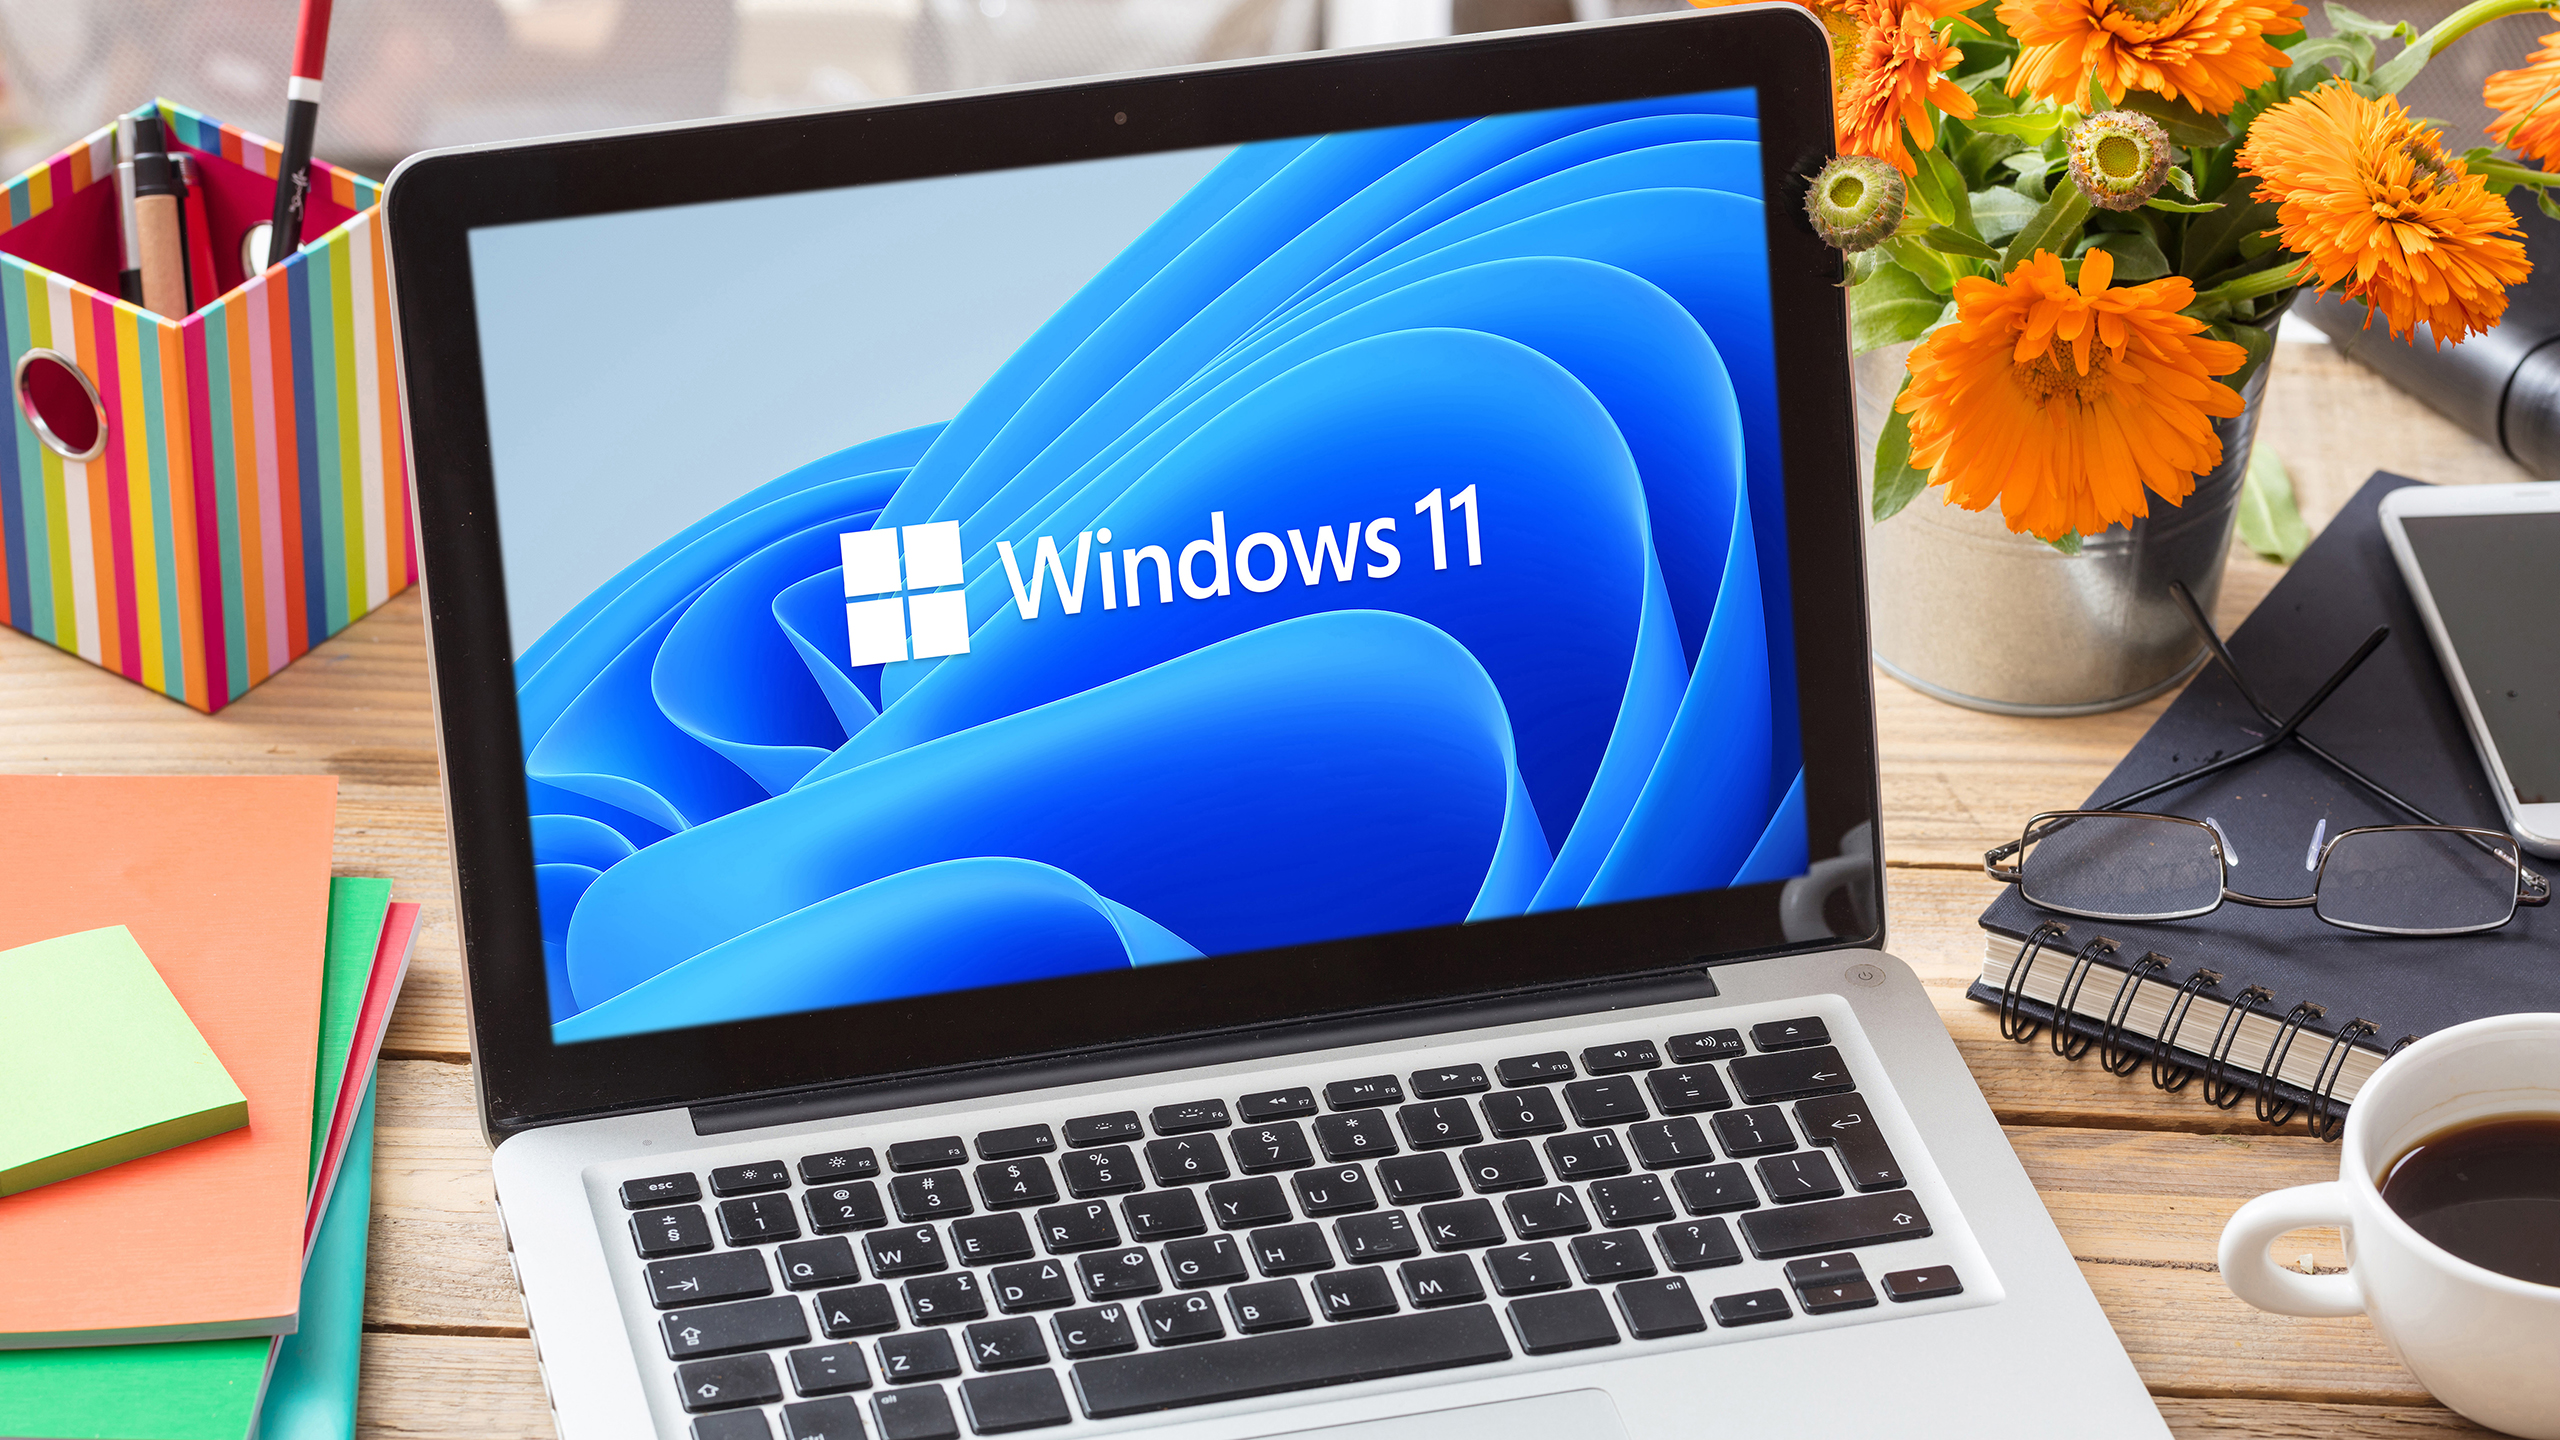 컴퓨터 노트북 디스플레이, 비즈니스 사무실 테이블의 Windows 11 공식 브랜드 사인